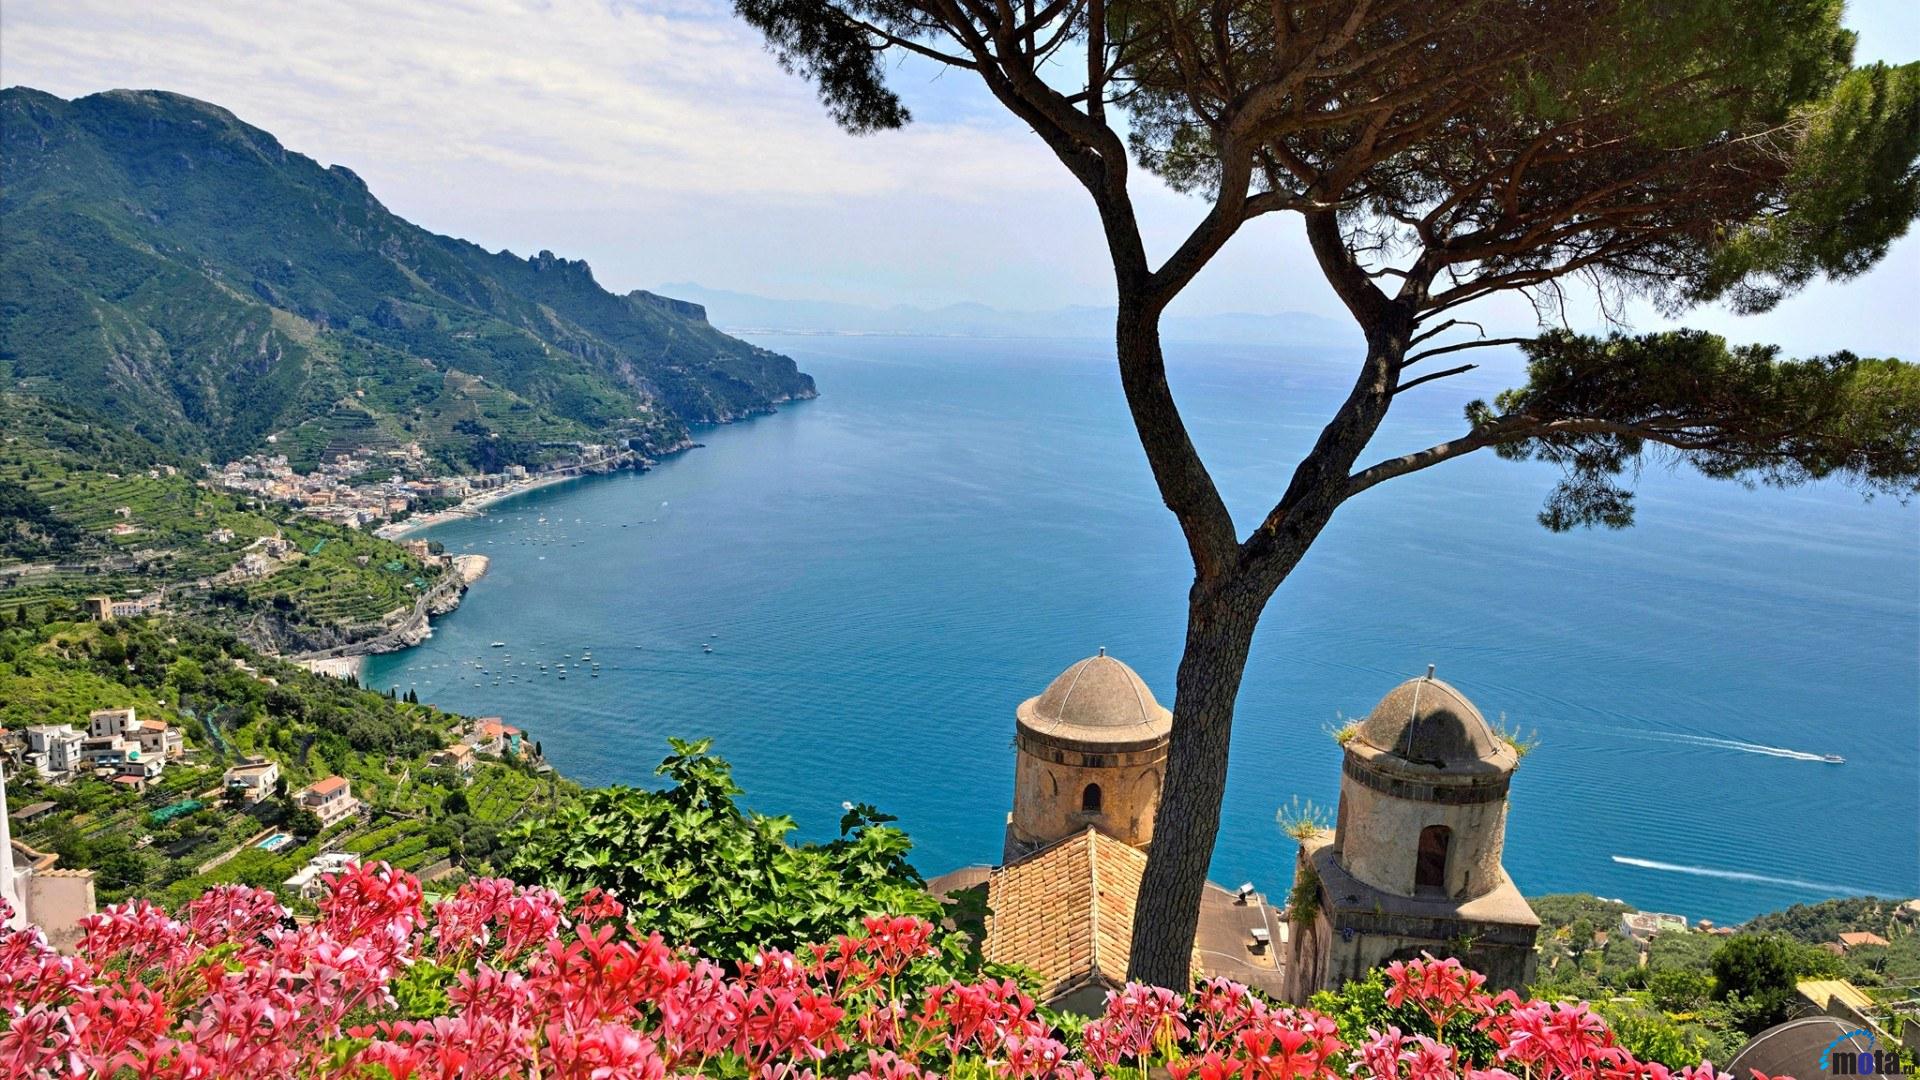 Với hình nền máy tính đồi núi bờ biển Amalfi, Italy, bạn sẽ được đưa đến chuyến phiêu lưu khám phá những vùng đất hoang sơ và đẹp như mơ. Những hình ảnh đẹp của đồi núi và bờ biển sẽ làm bạn cảm thấy tuyệt vời khi trang trí cho máy tính.